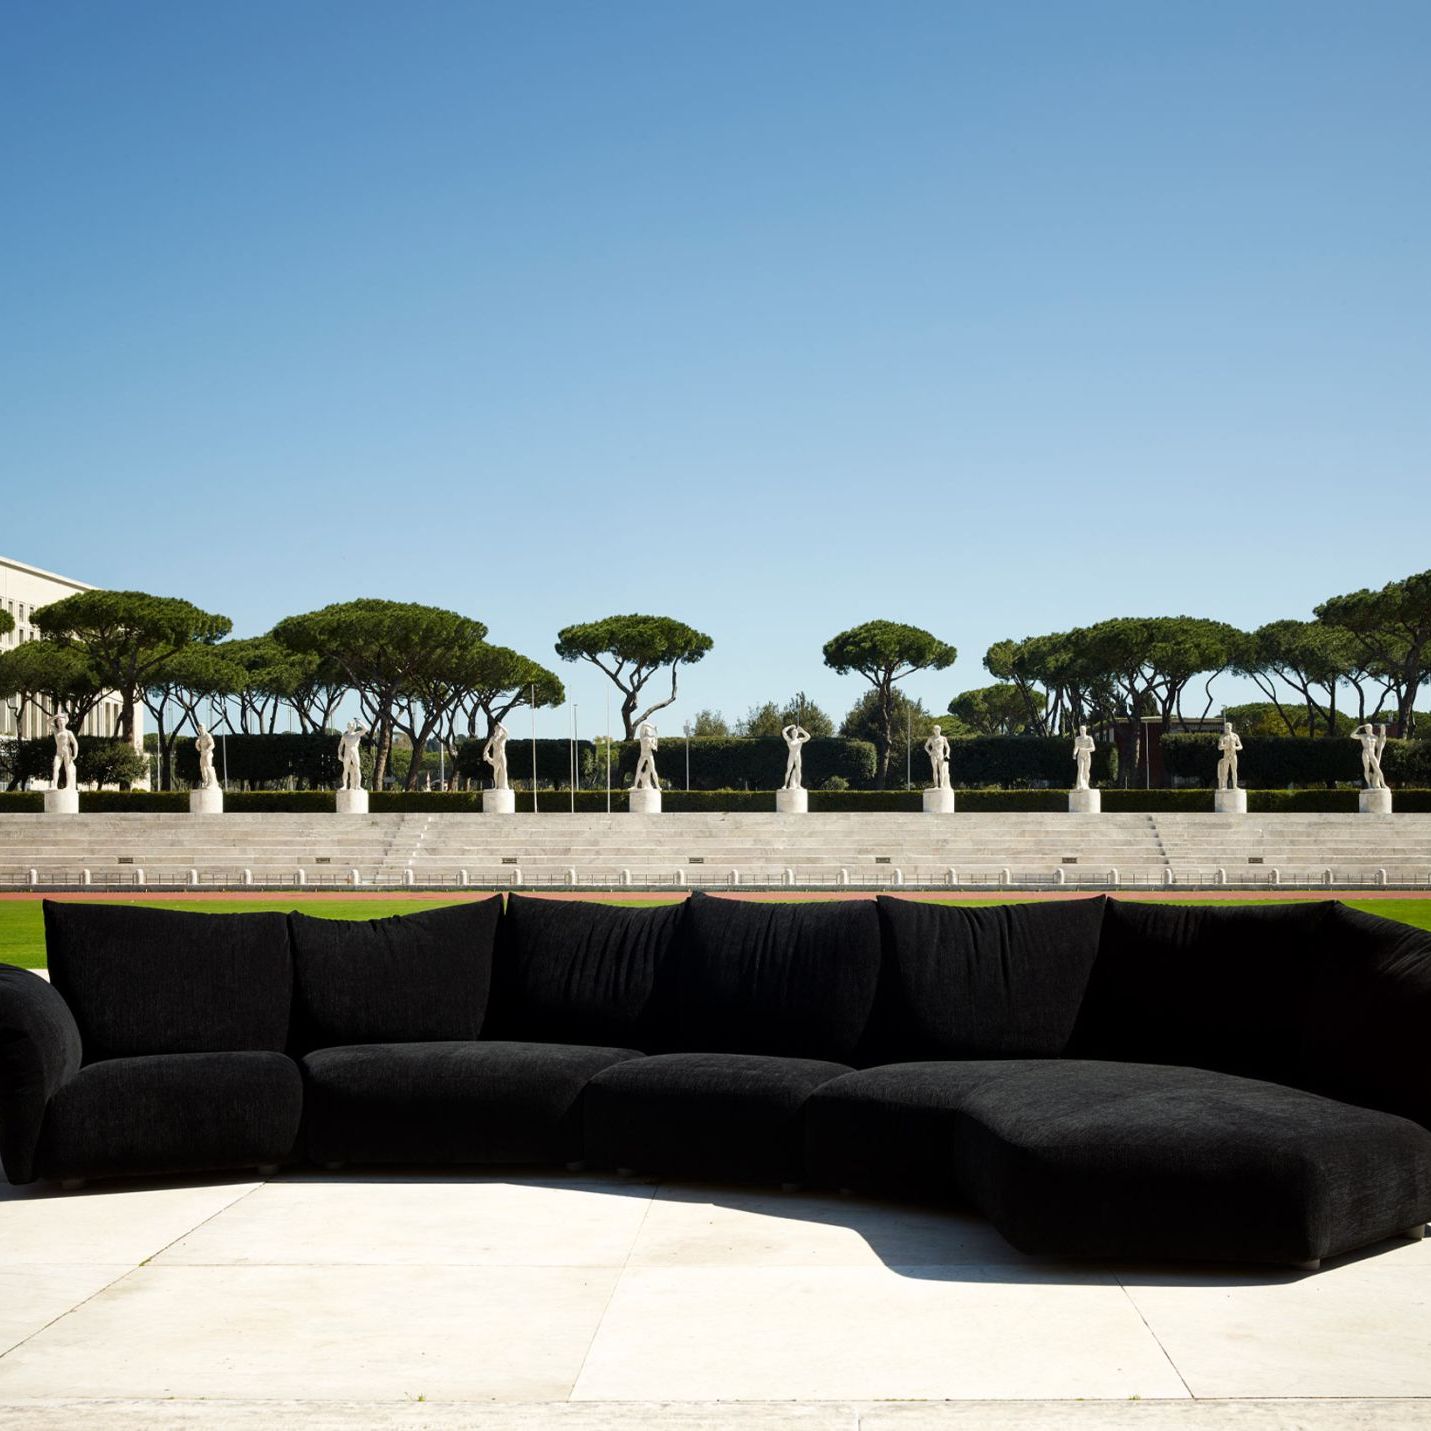   Standard  Il divano di Francesco Binfaré nell’allestimento speciale dello Stadio dei Marmi a Roma. Sullo sfondo le 60 statue marmoree che rappresentano le discipline sportive.